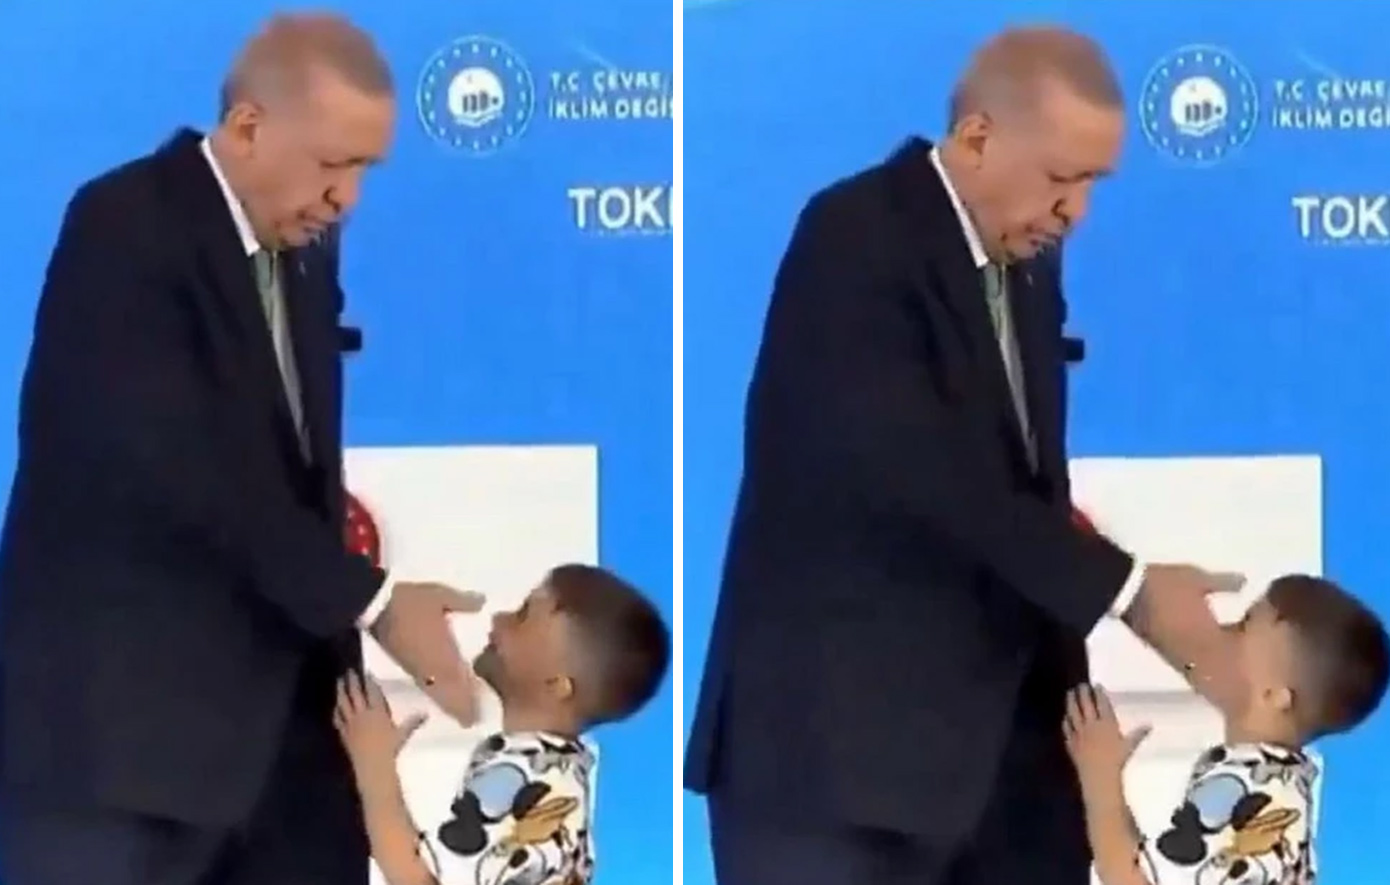 Βίντεο δείχνει τον Ρετζέπ Ταγίπ Ερντογάν να χαστουκίζει μικρό αγόρι επειδή δεν του φίλησε το χέρι